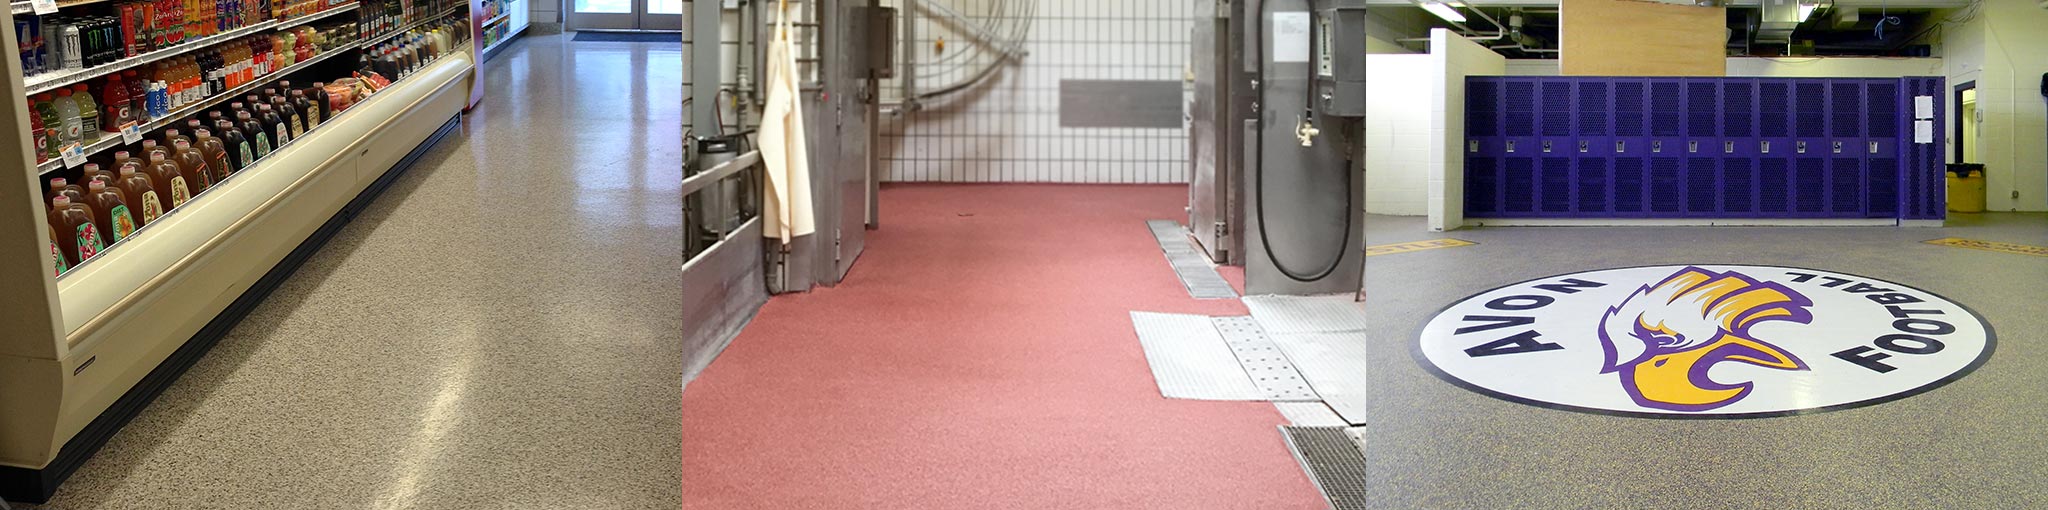 Kwortz UMC Floor System Quartz by Duraamen Kwortz UMC | Decorative Quartz Urethane Concrete Floor System by Duraamen | Duraamen Engineered Products Inc